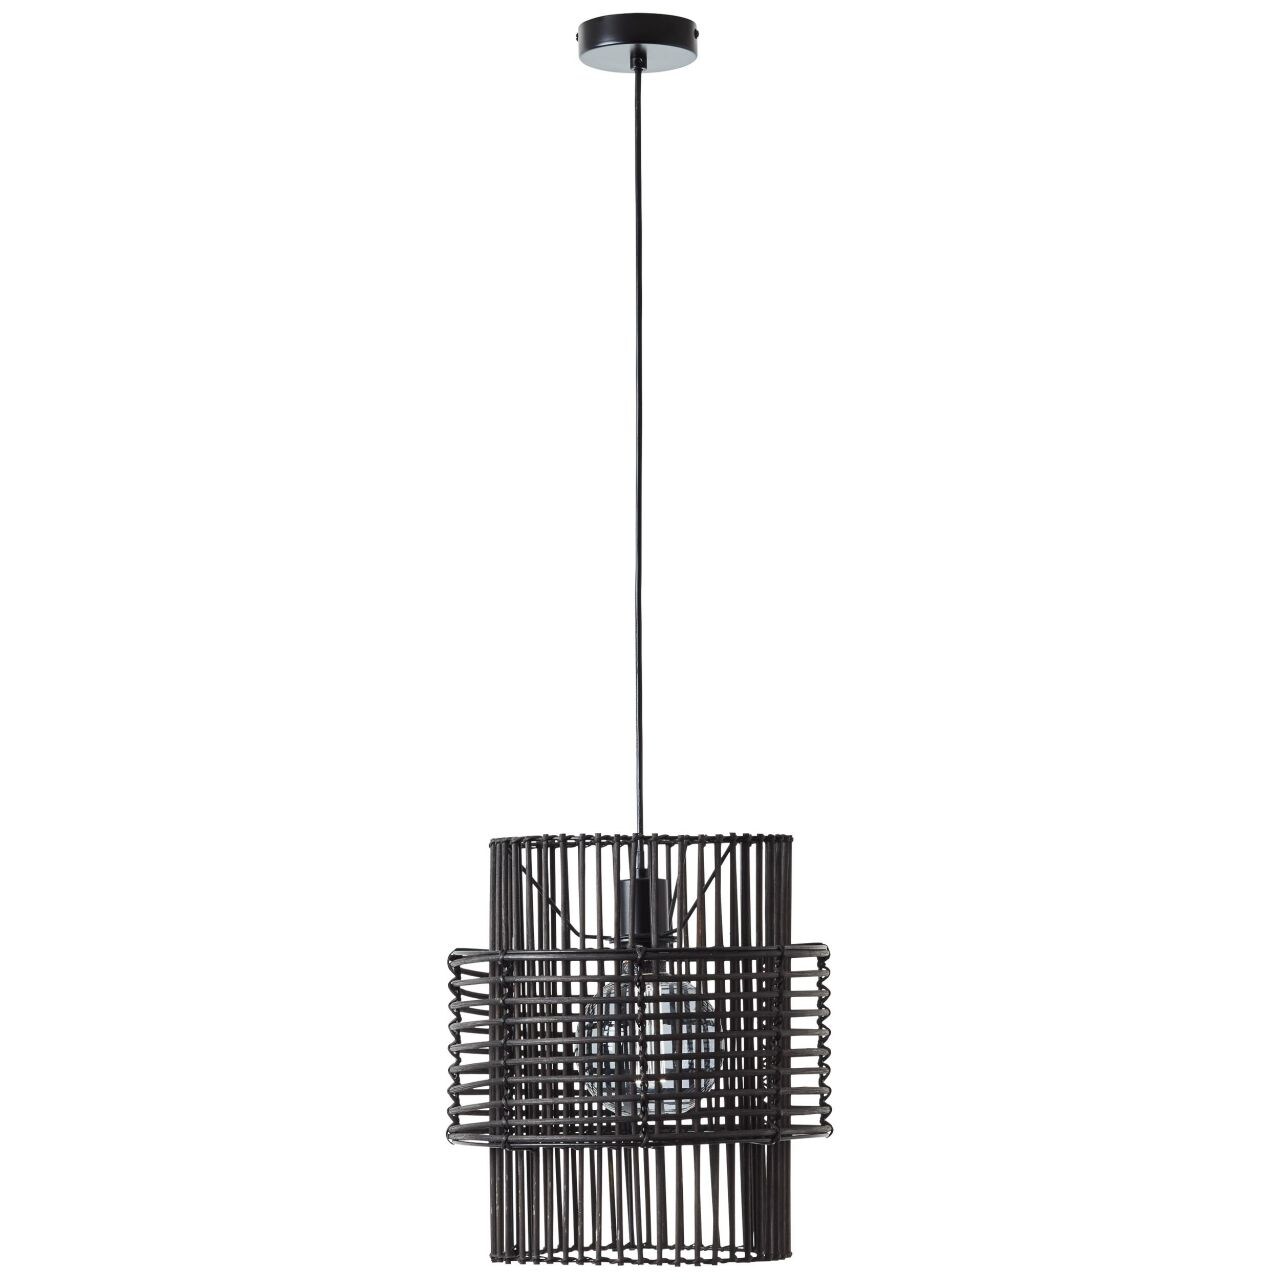 BRILLIANT Lampe, Chatham Pendelleuchte 30cm schwarz, 1x A60, E27, 25W, Kabel kürzbar / in der Höhe einstellbar